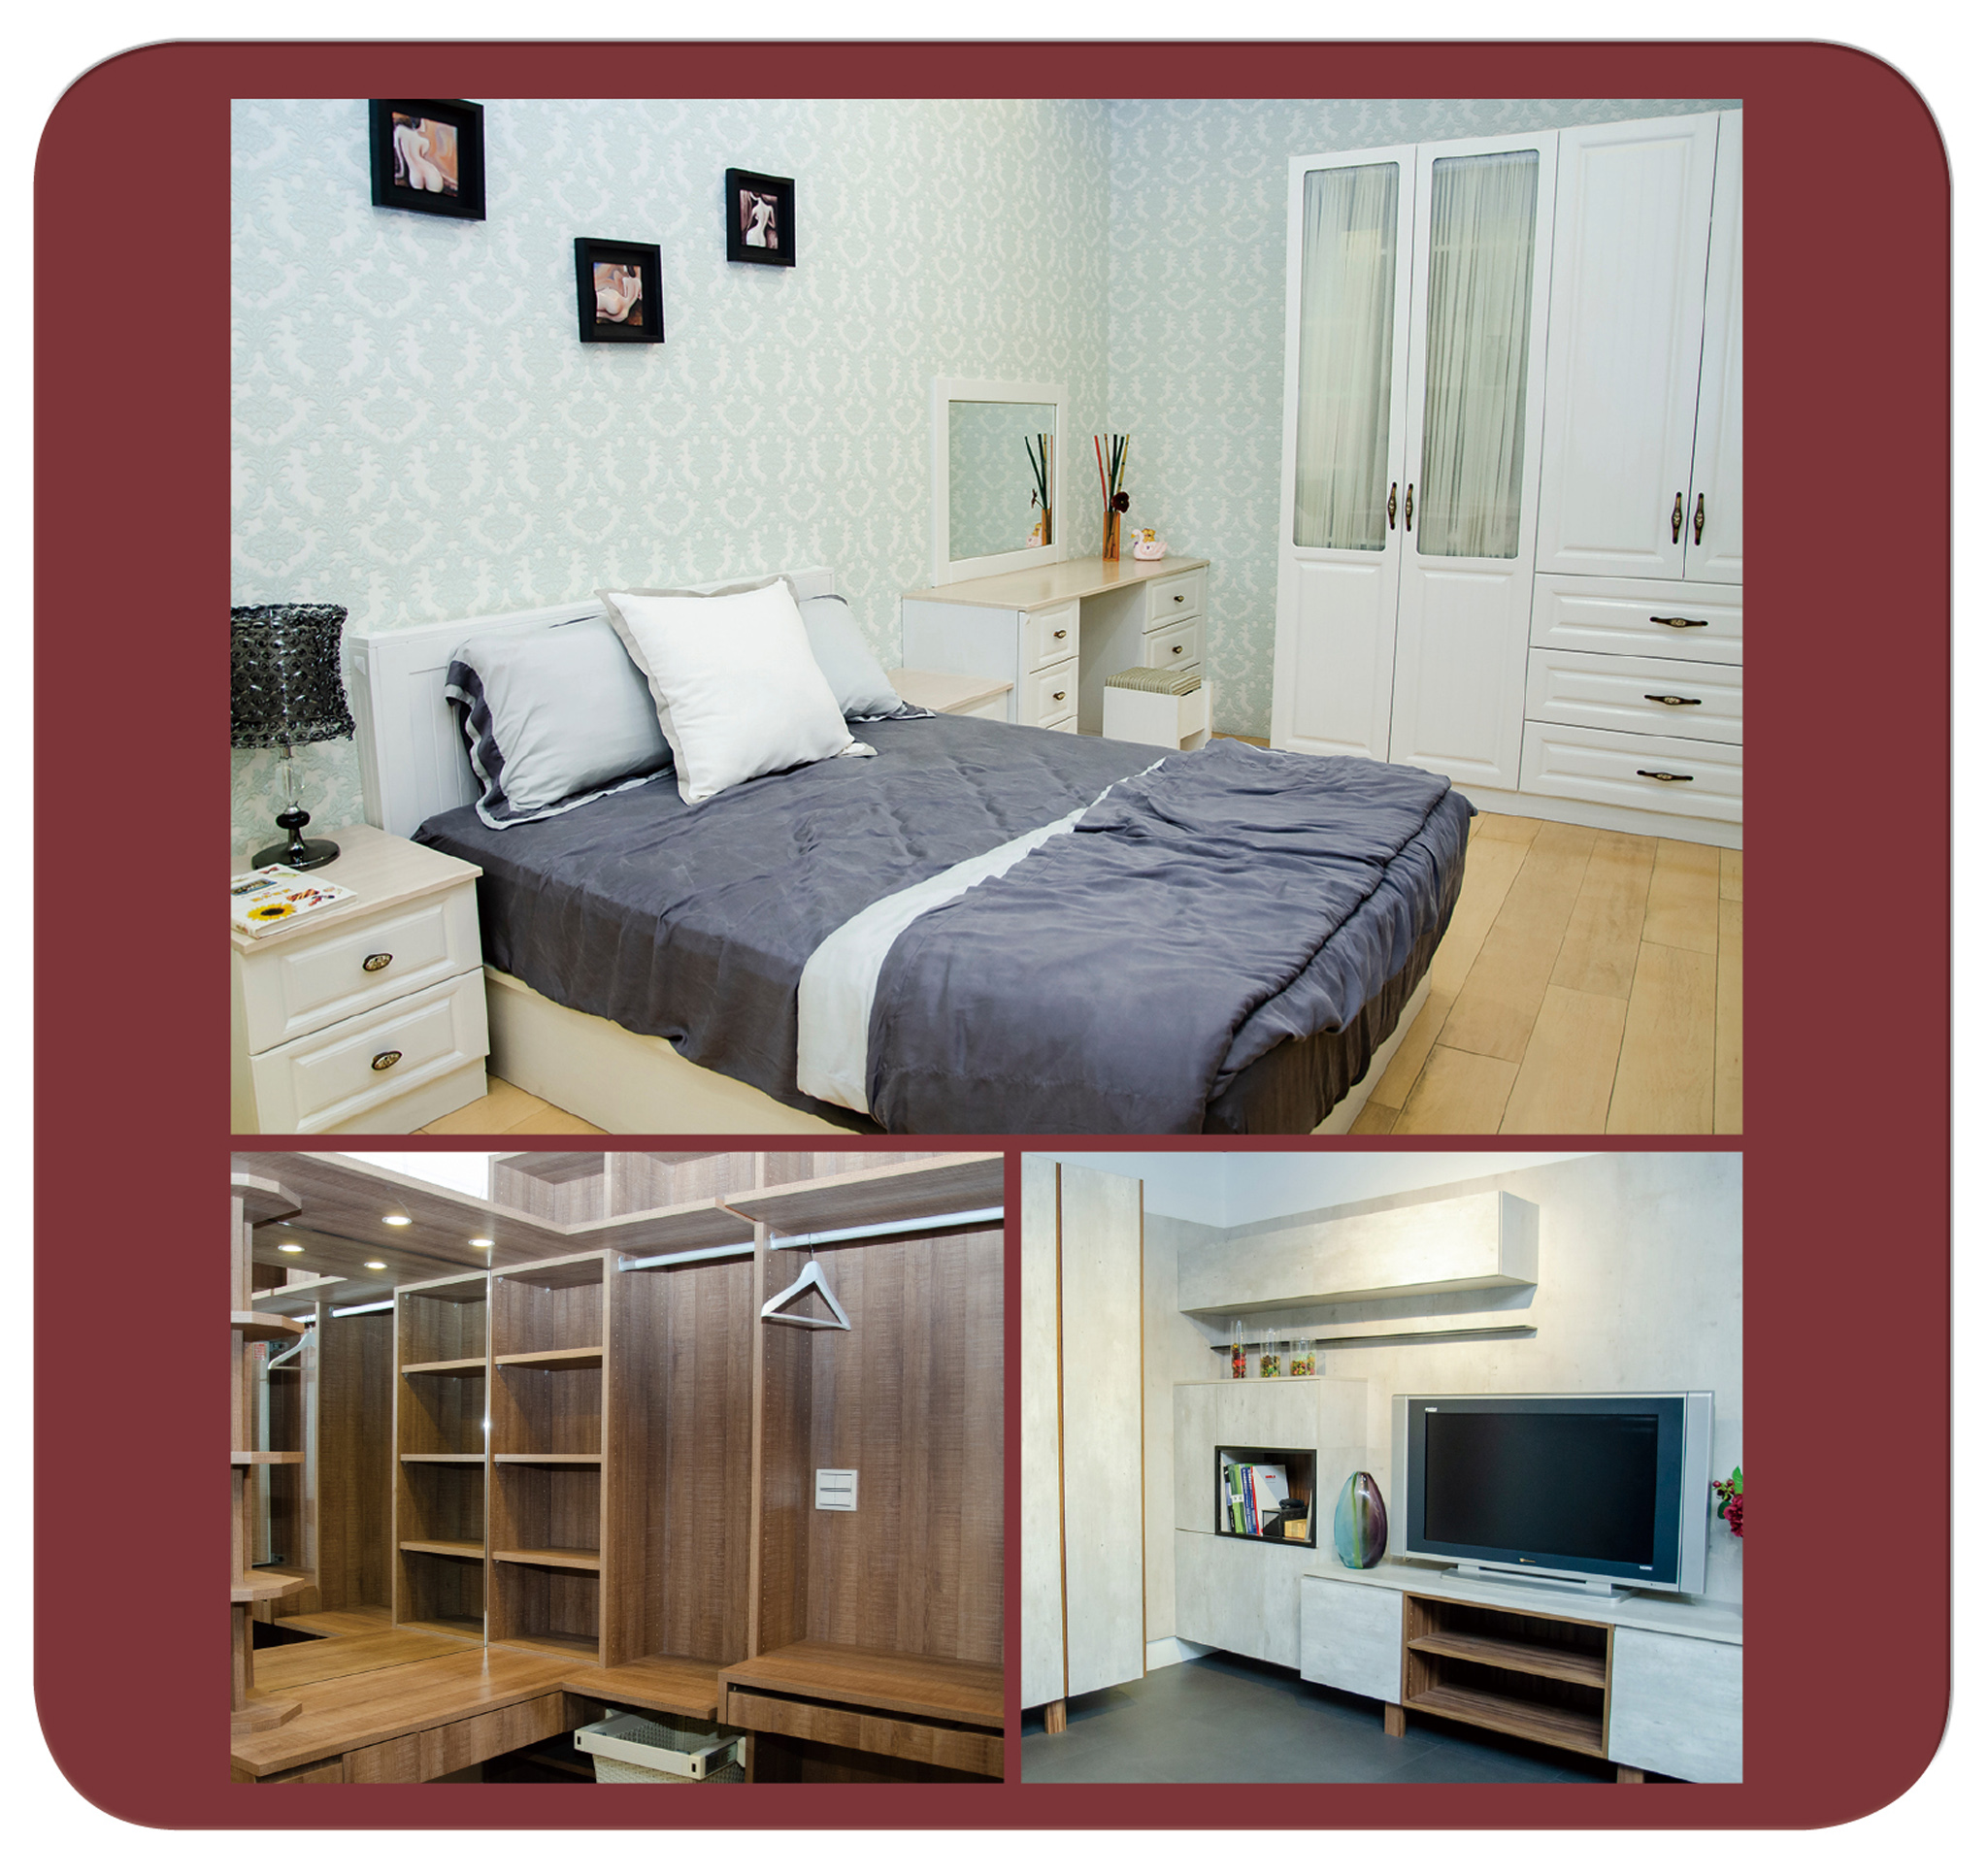 除歐化廚具以外，龍禾亦提供臥室、客廳、更衣室等系統廚櫃家具，打造一條龍服務模式。